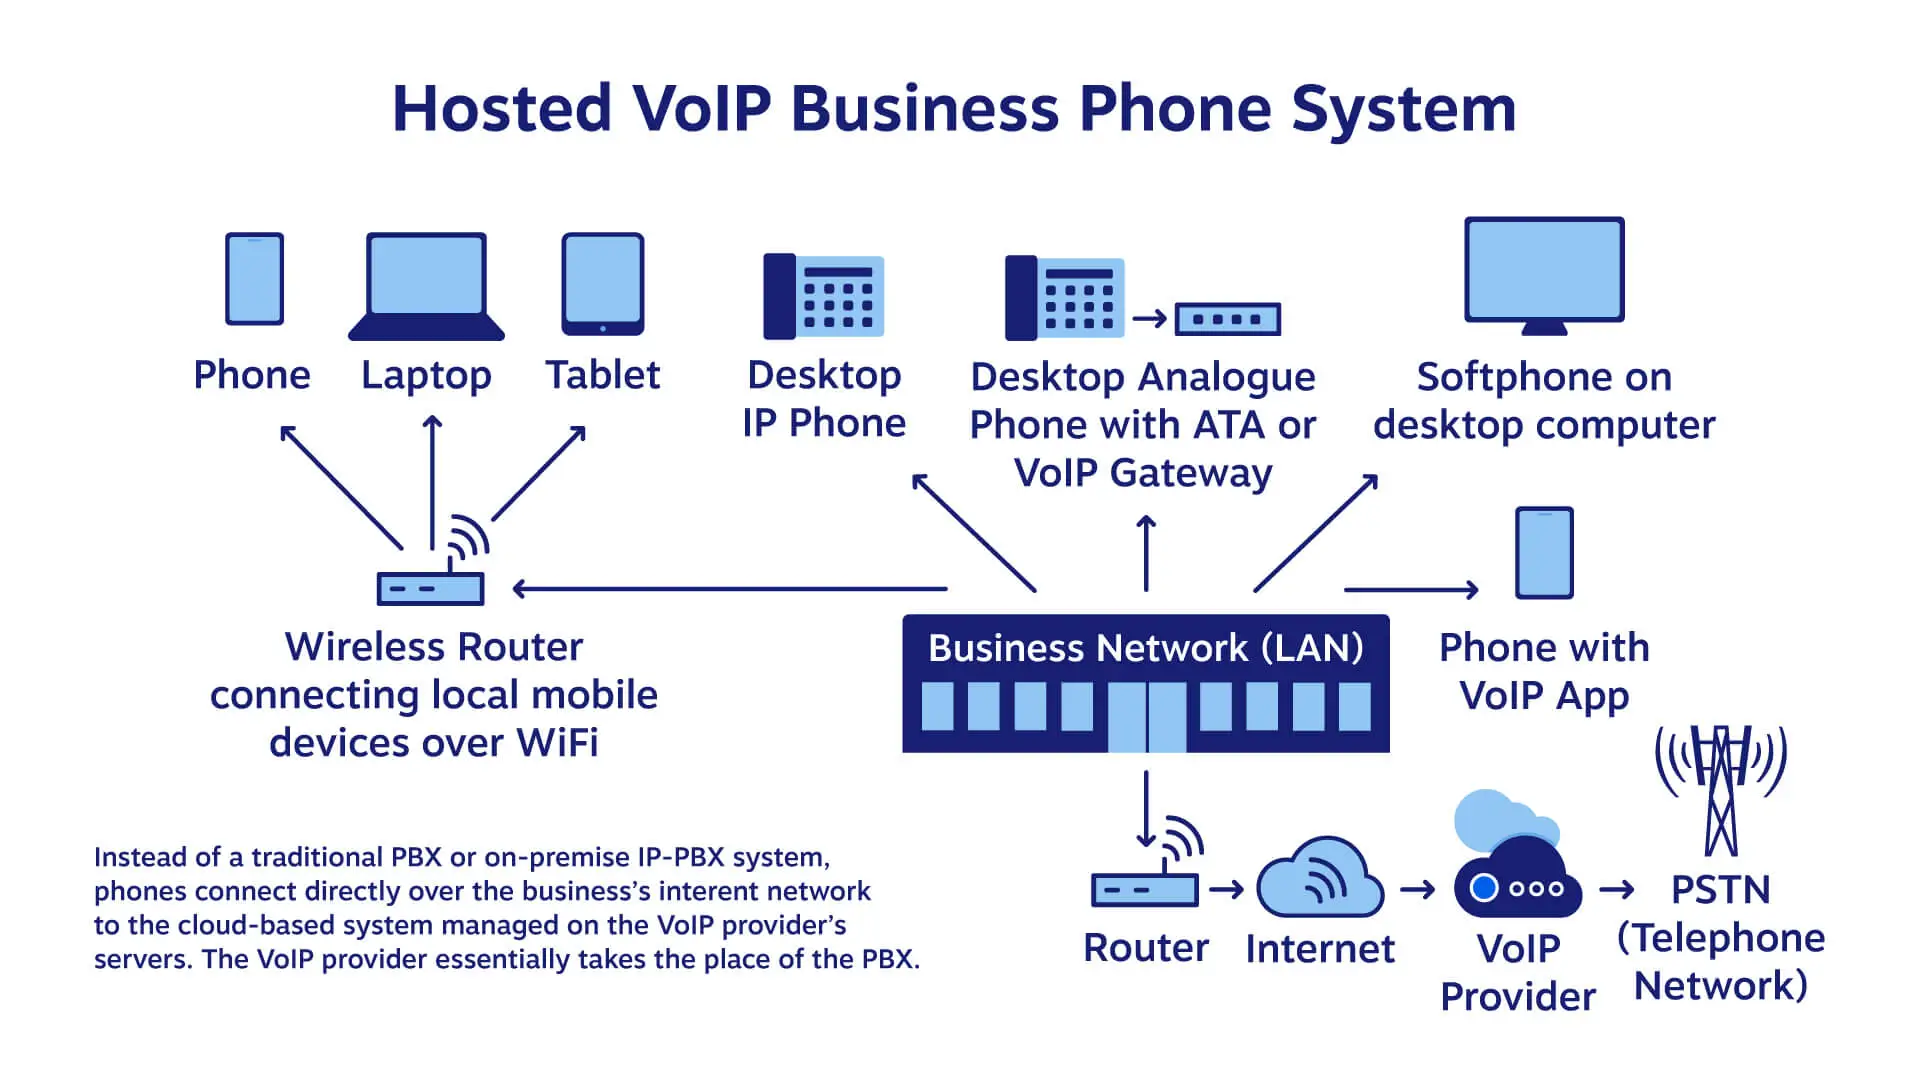 แผนภาพแสดงระบบโทรศัพท์ธุรกิจ VoIP